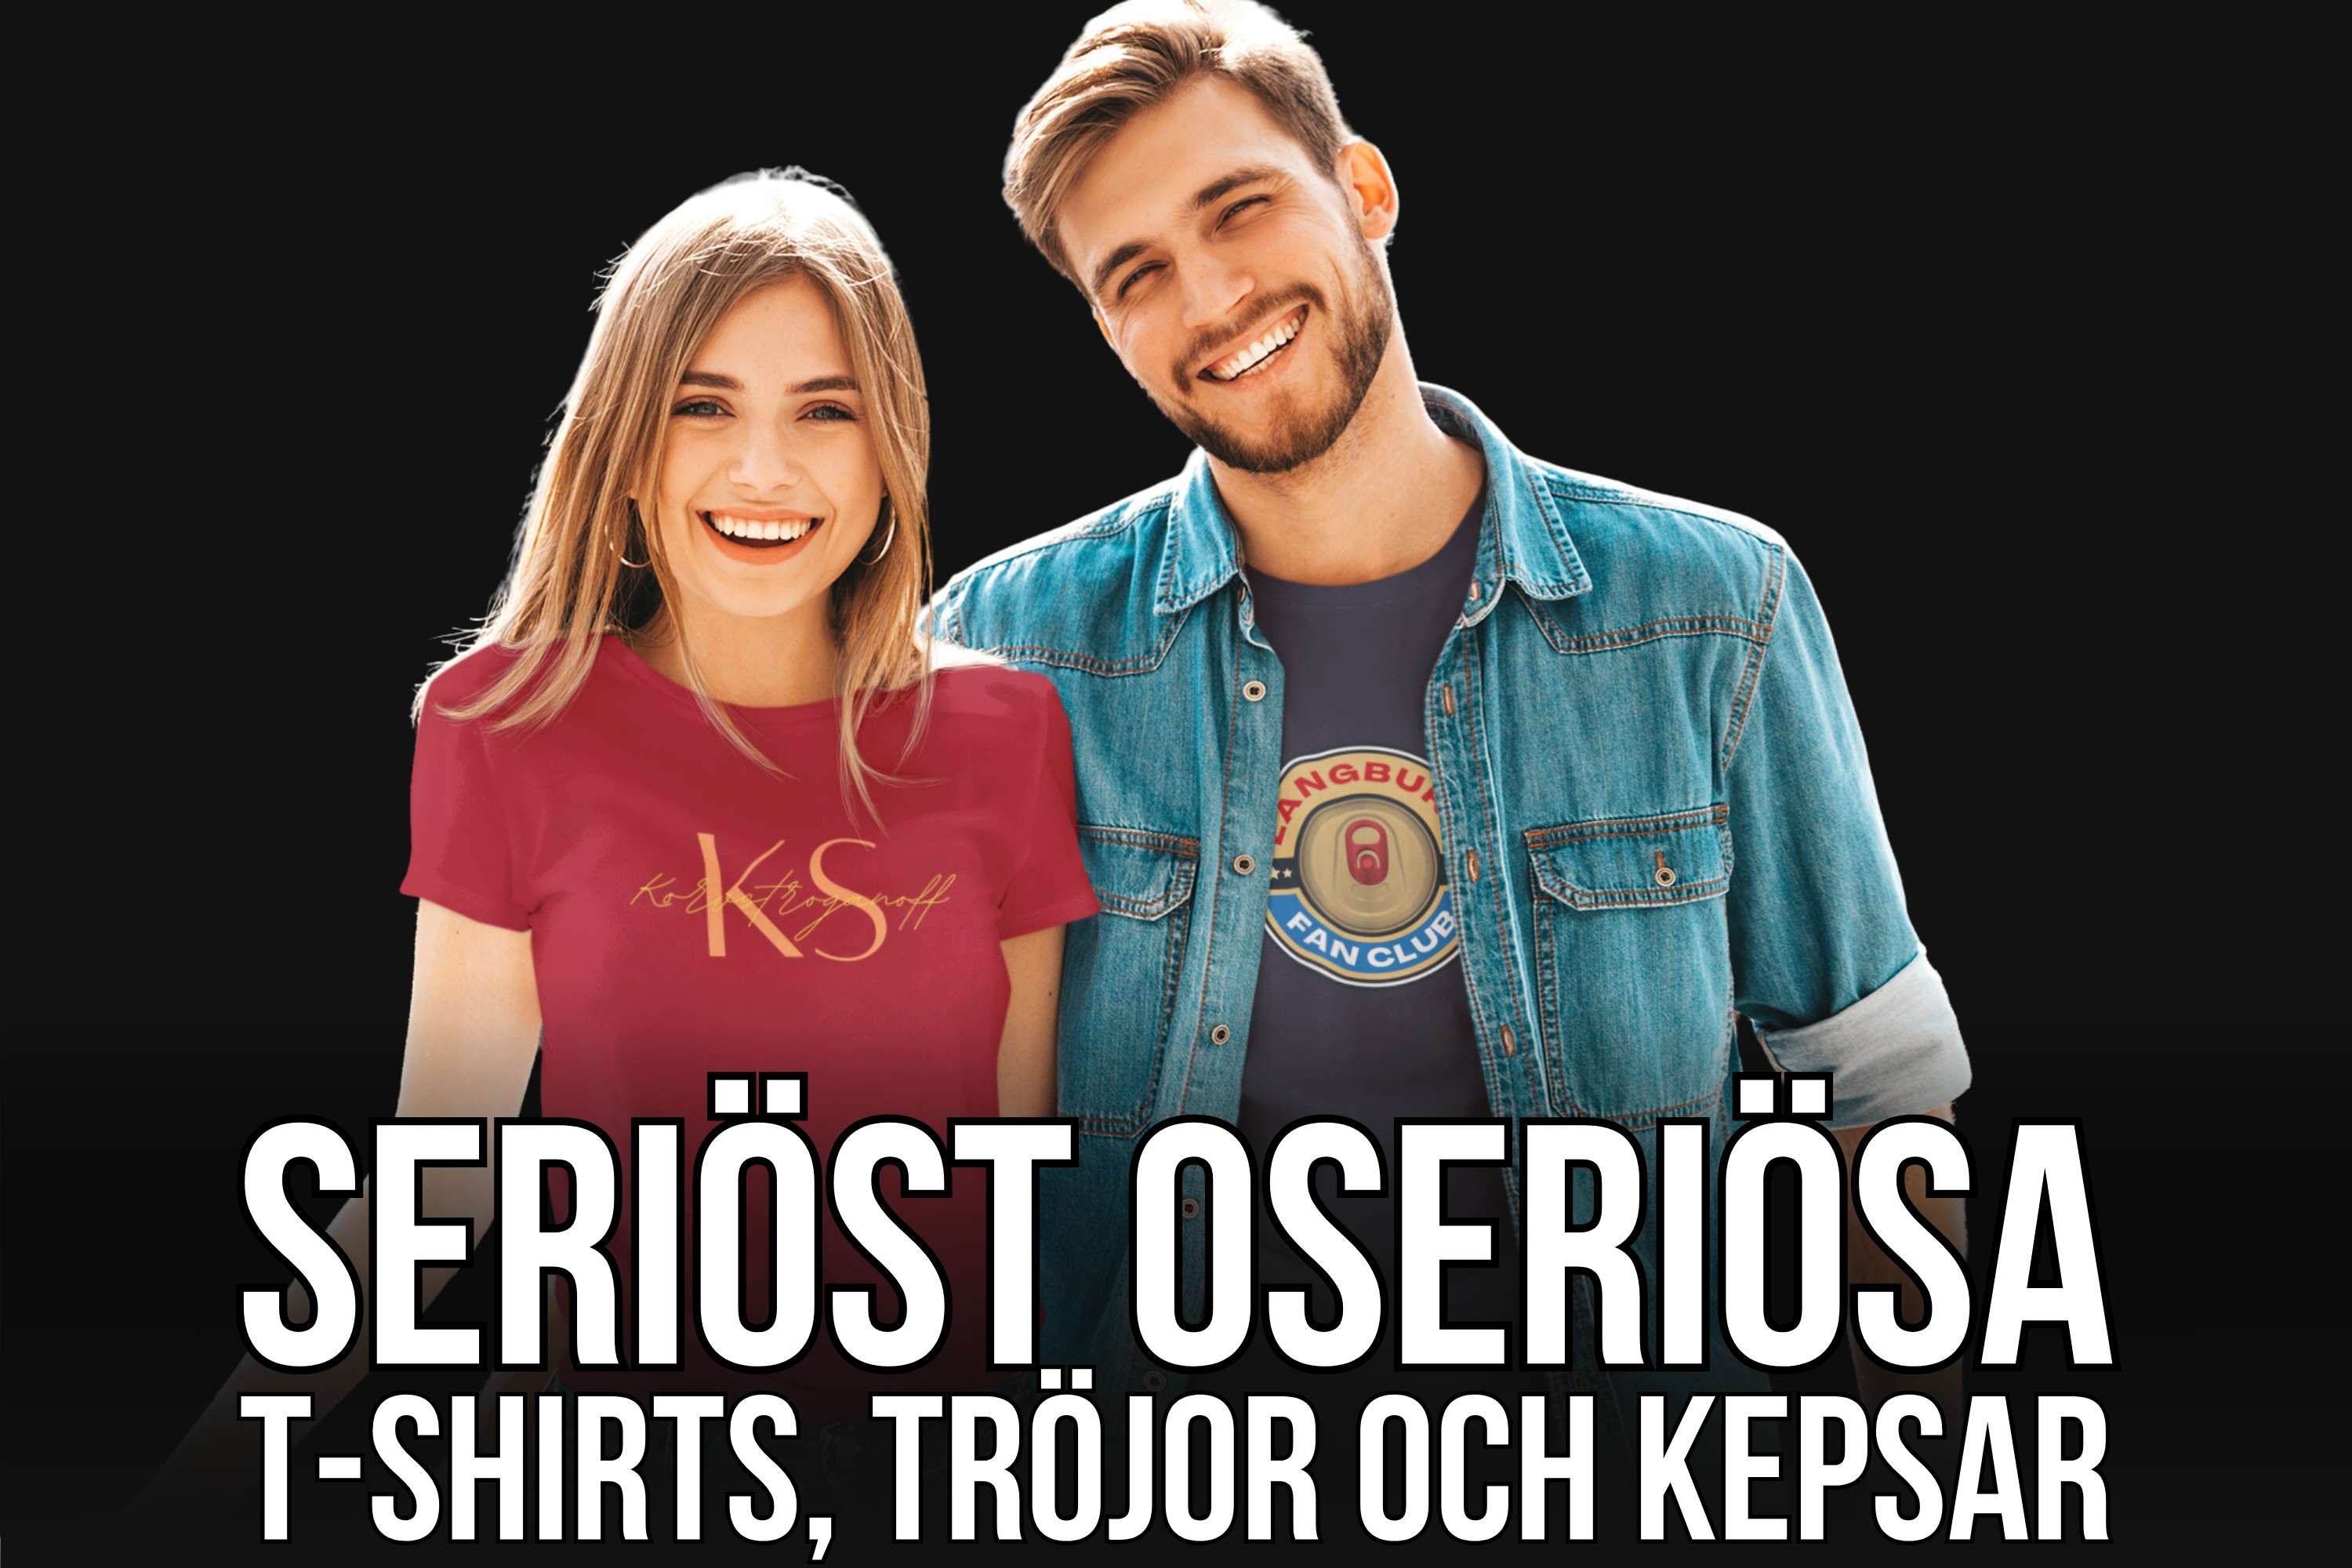 Två glada personer med fina t-shirts och texten "Seriöst oseriösa t-shirts, tröjor och kepsar"